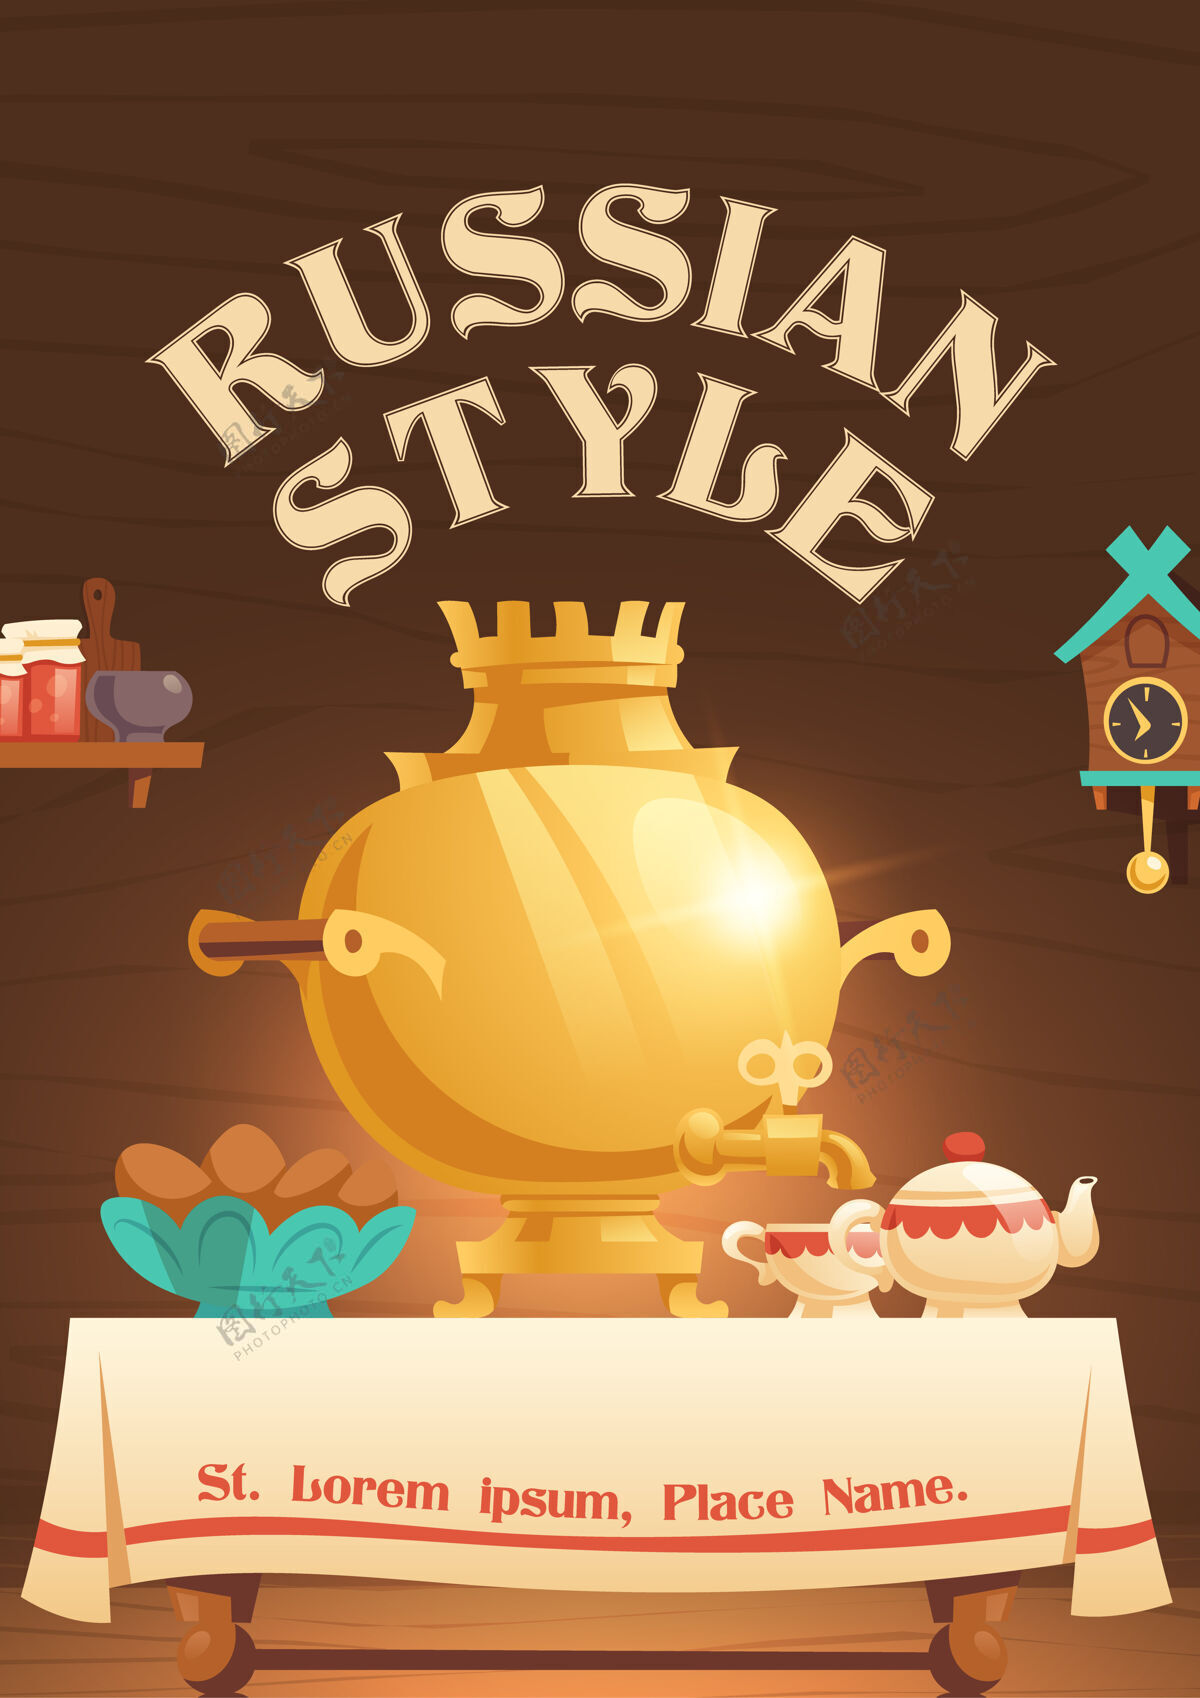 国家俄罗斯风格的卡通海报与旧农村厨房内部的东西萨莫瓦尔在桌子上茶壶和面包房在盘子里 布谷鸟时钟 果酱和木制架子上的器具 传统的房子杯子卡通面包房